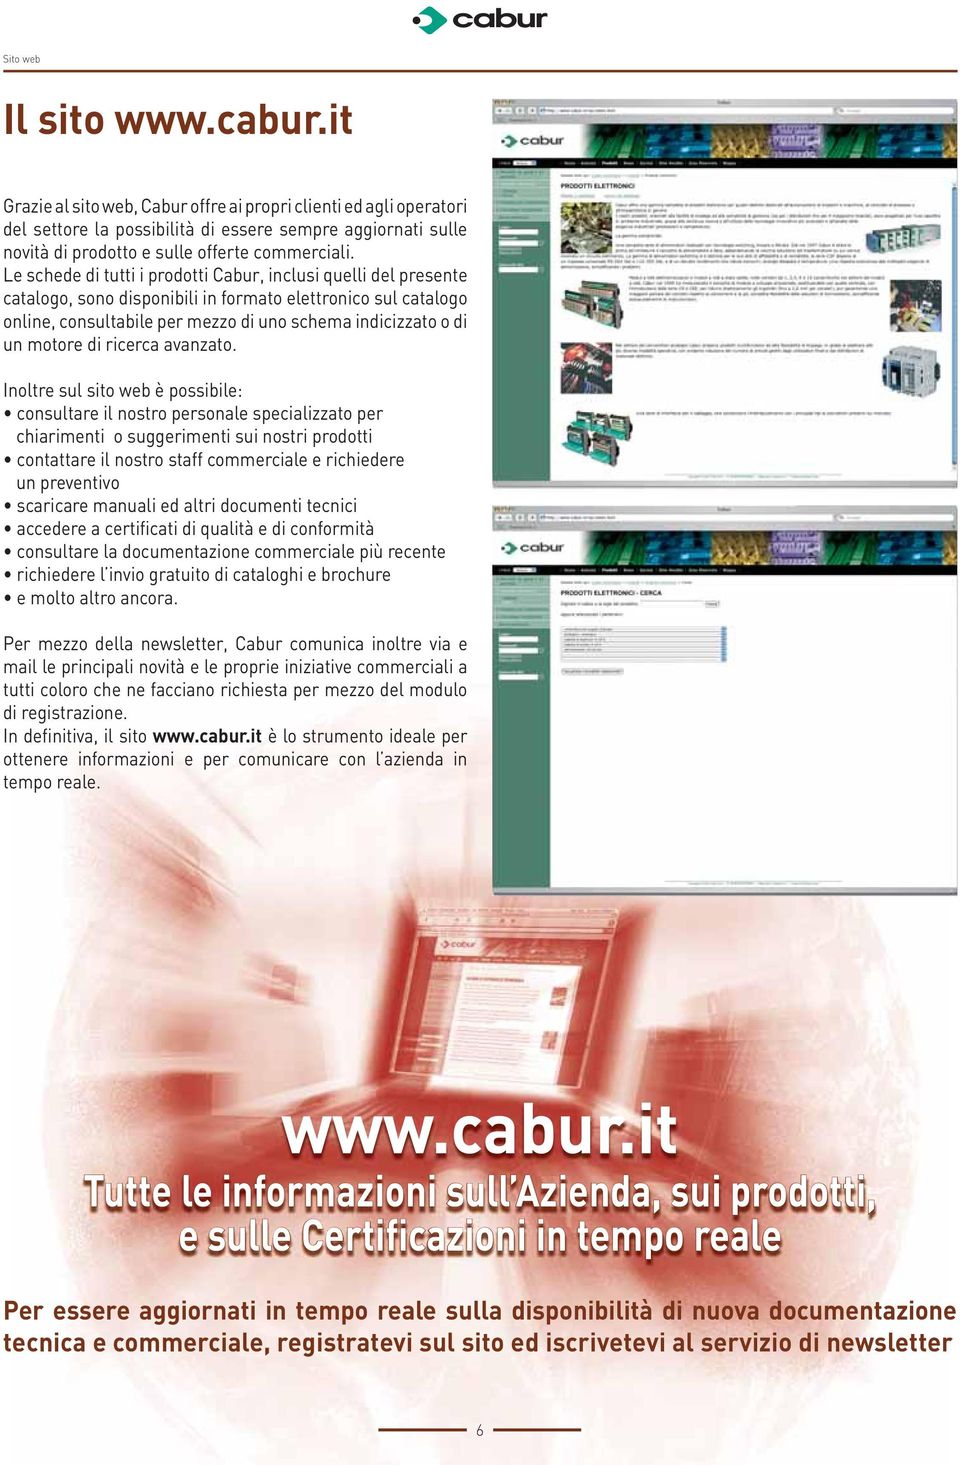 Le schede di tutti i prodotti Cabur, inclusi quelli del presente catalogo, sono disponibili in formato elettronico sul catalogo online, consultabile per mezzo di uno schema indicizzato o di un motore